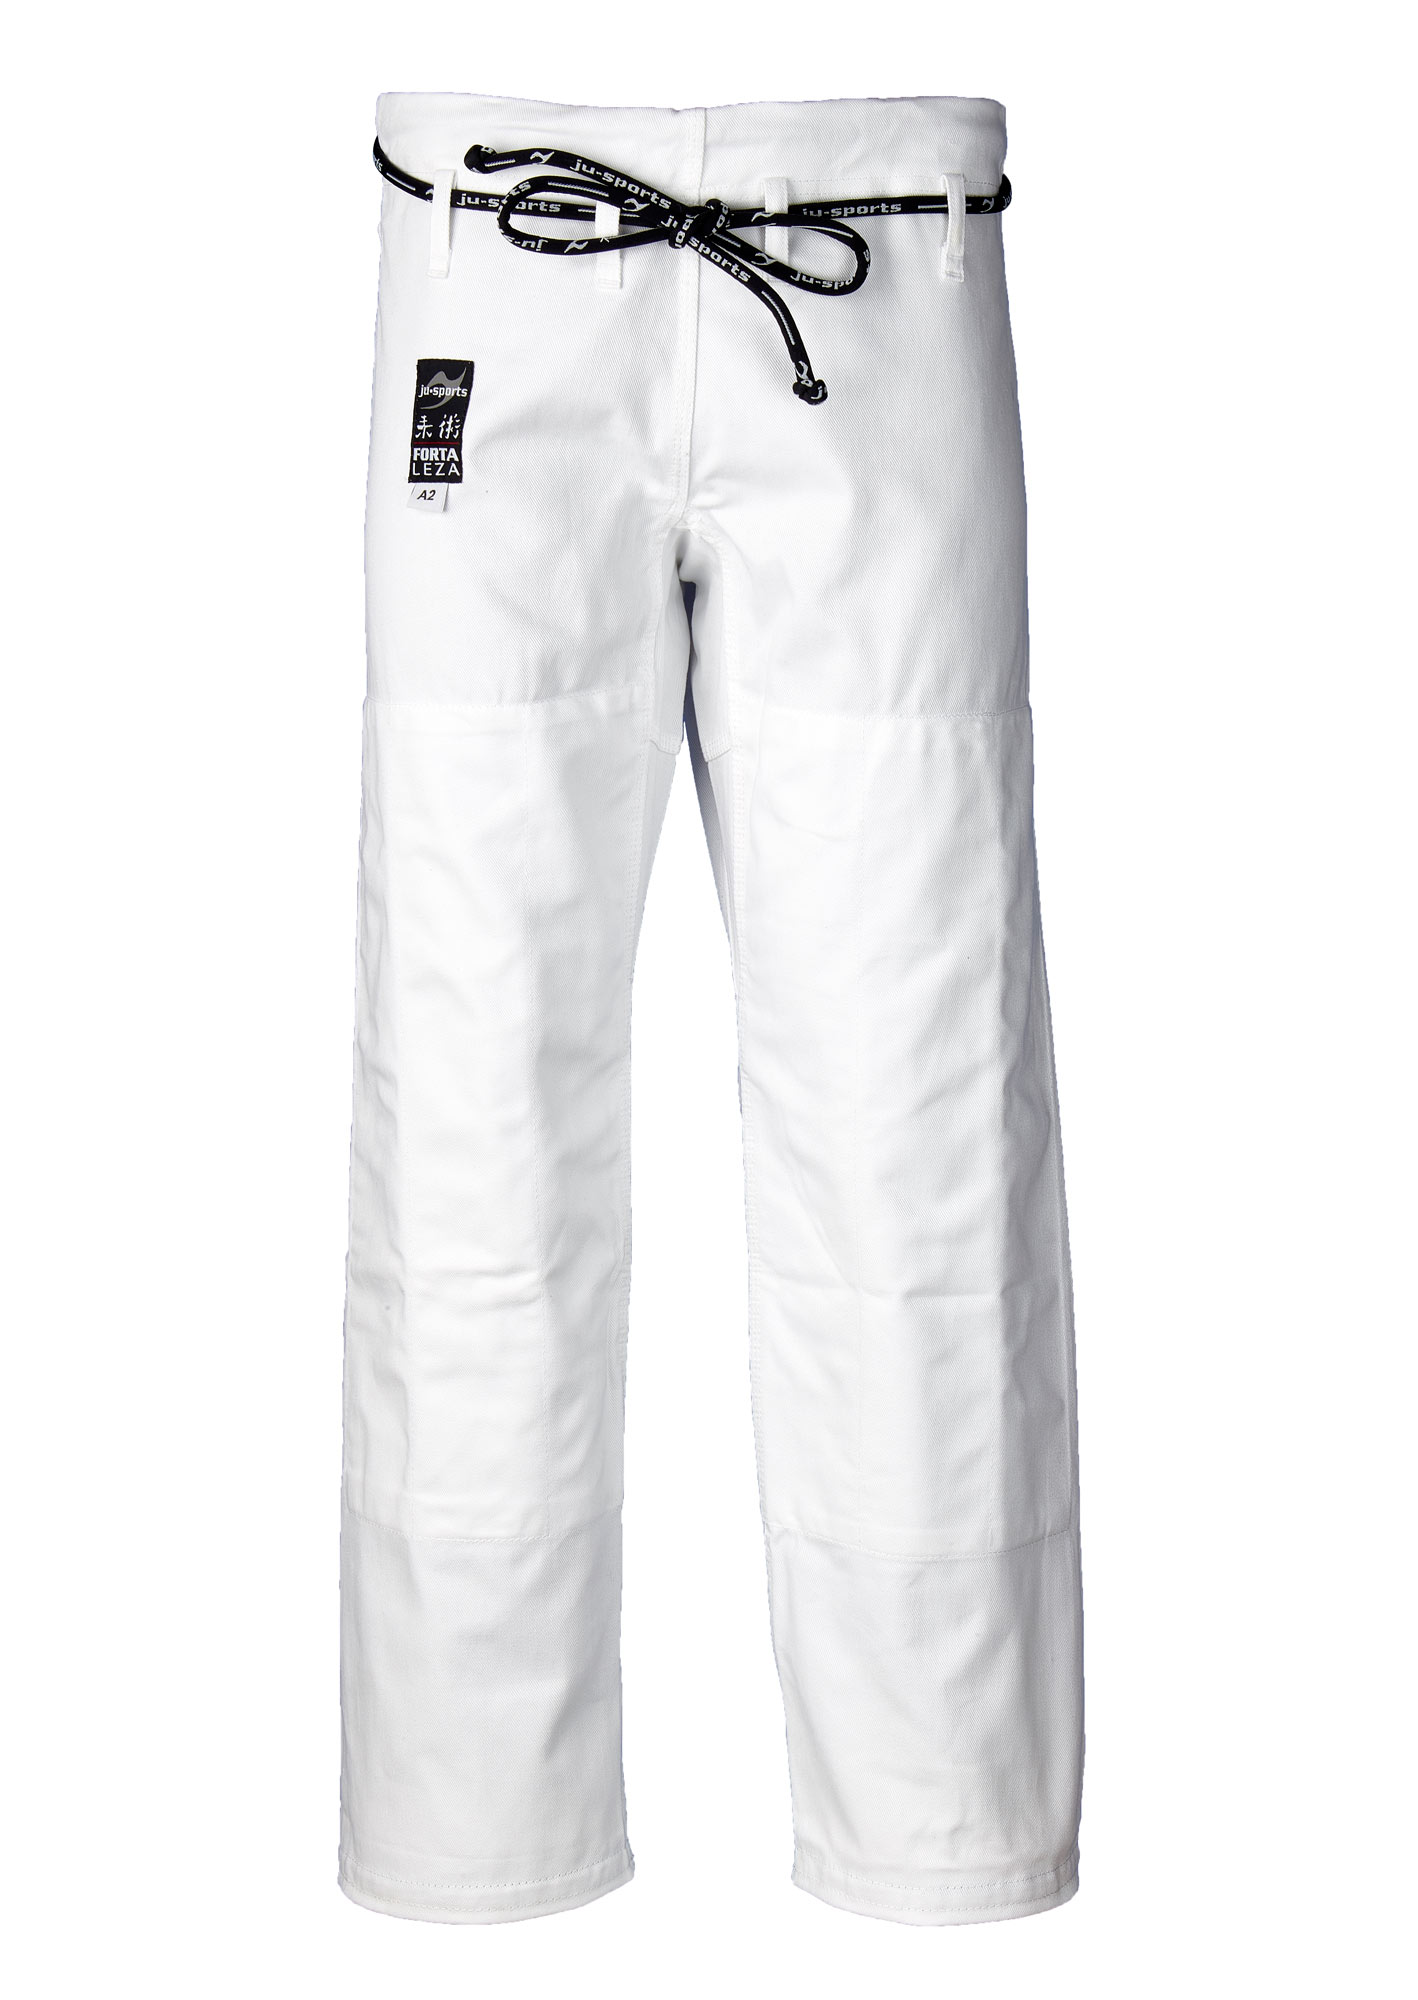 BJJ pants Fortaleza white